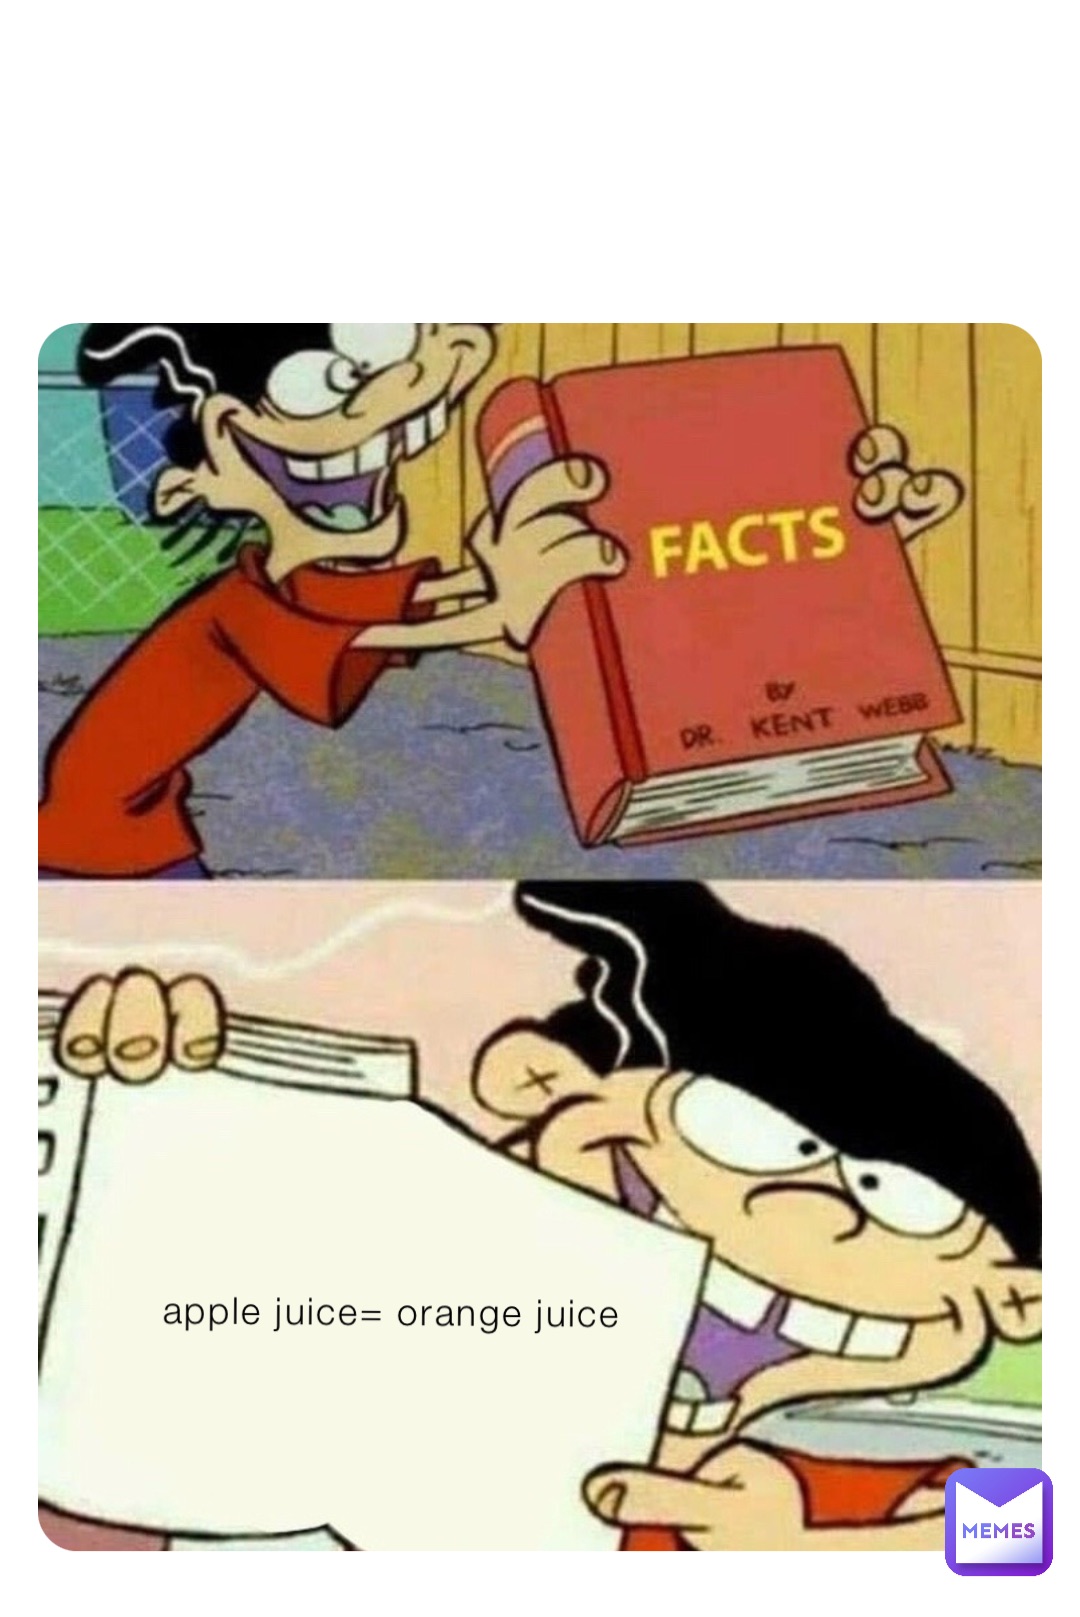 apple juice= orange juice